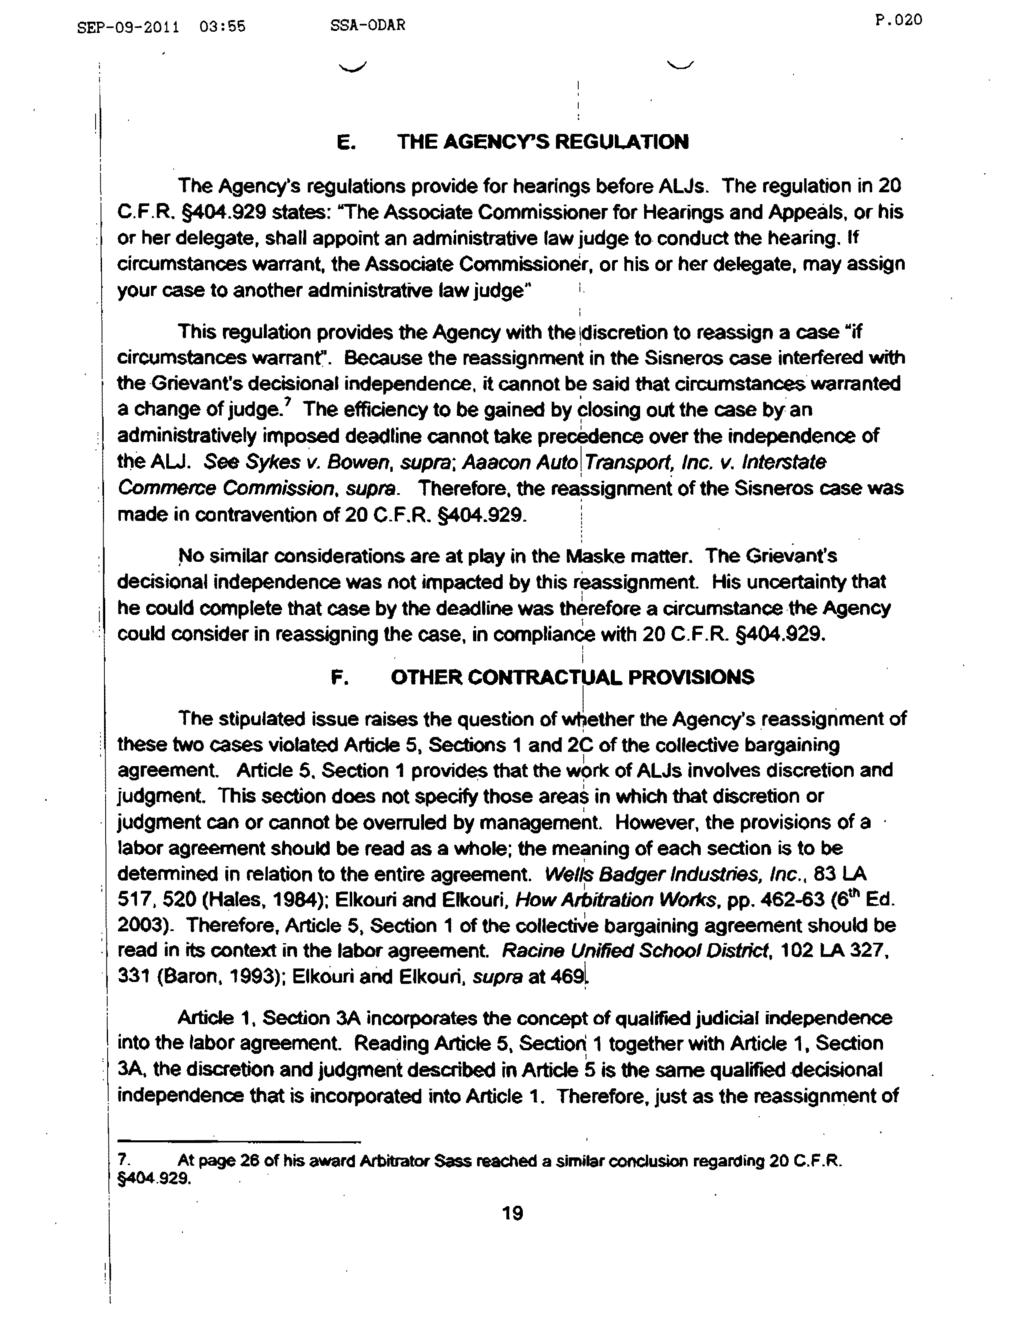 SEP-09-2011 03:55 SSA-ODAR P.020 E. THE AGENCY'S REGULATON The Agency's regulatons provde for hearngs before ALJs. The regulaton n 20 C.F.R. 404.